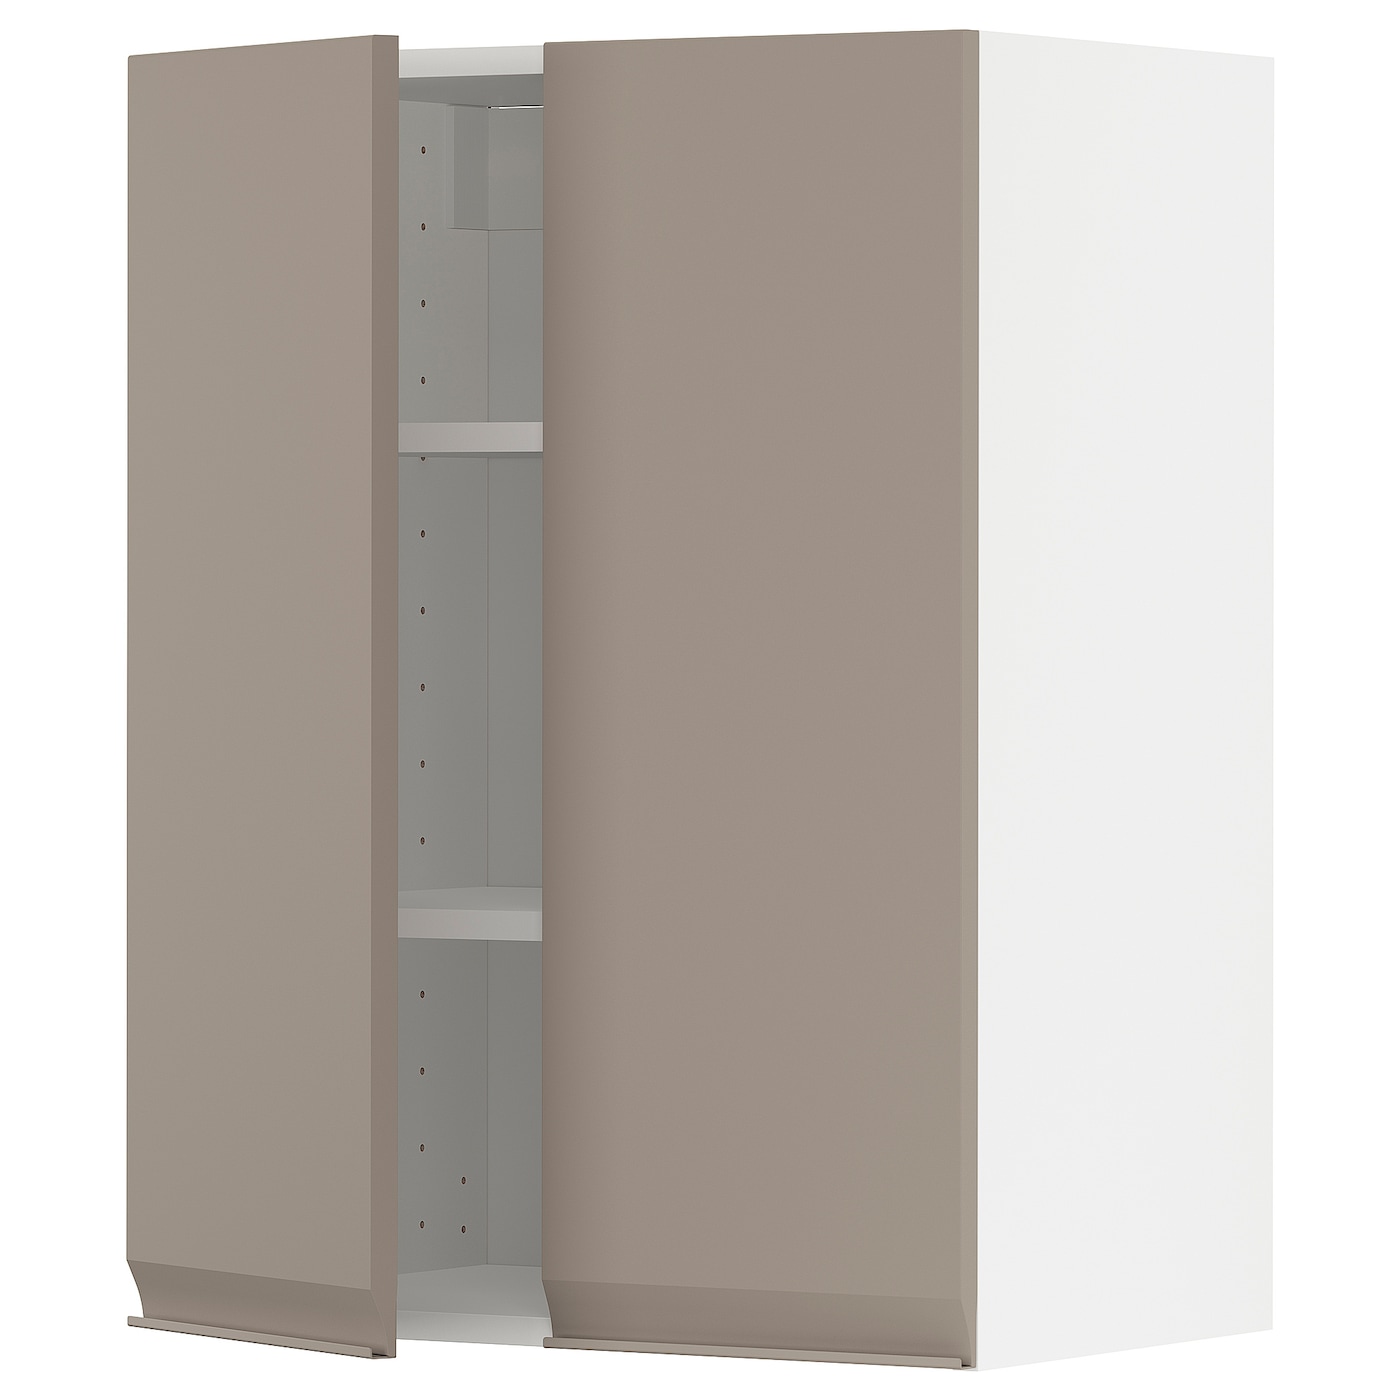 Навесной шкаф с полкой - METOD IKEA/ МЕТОД ИКЕА, 60х80 см,  белый/светло-коричневый